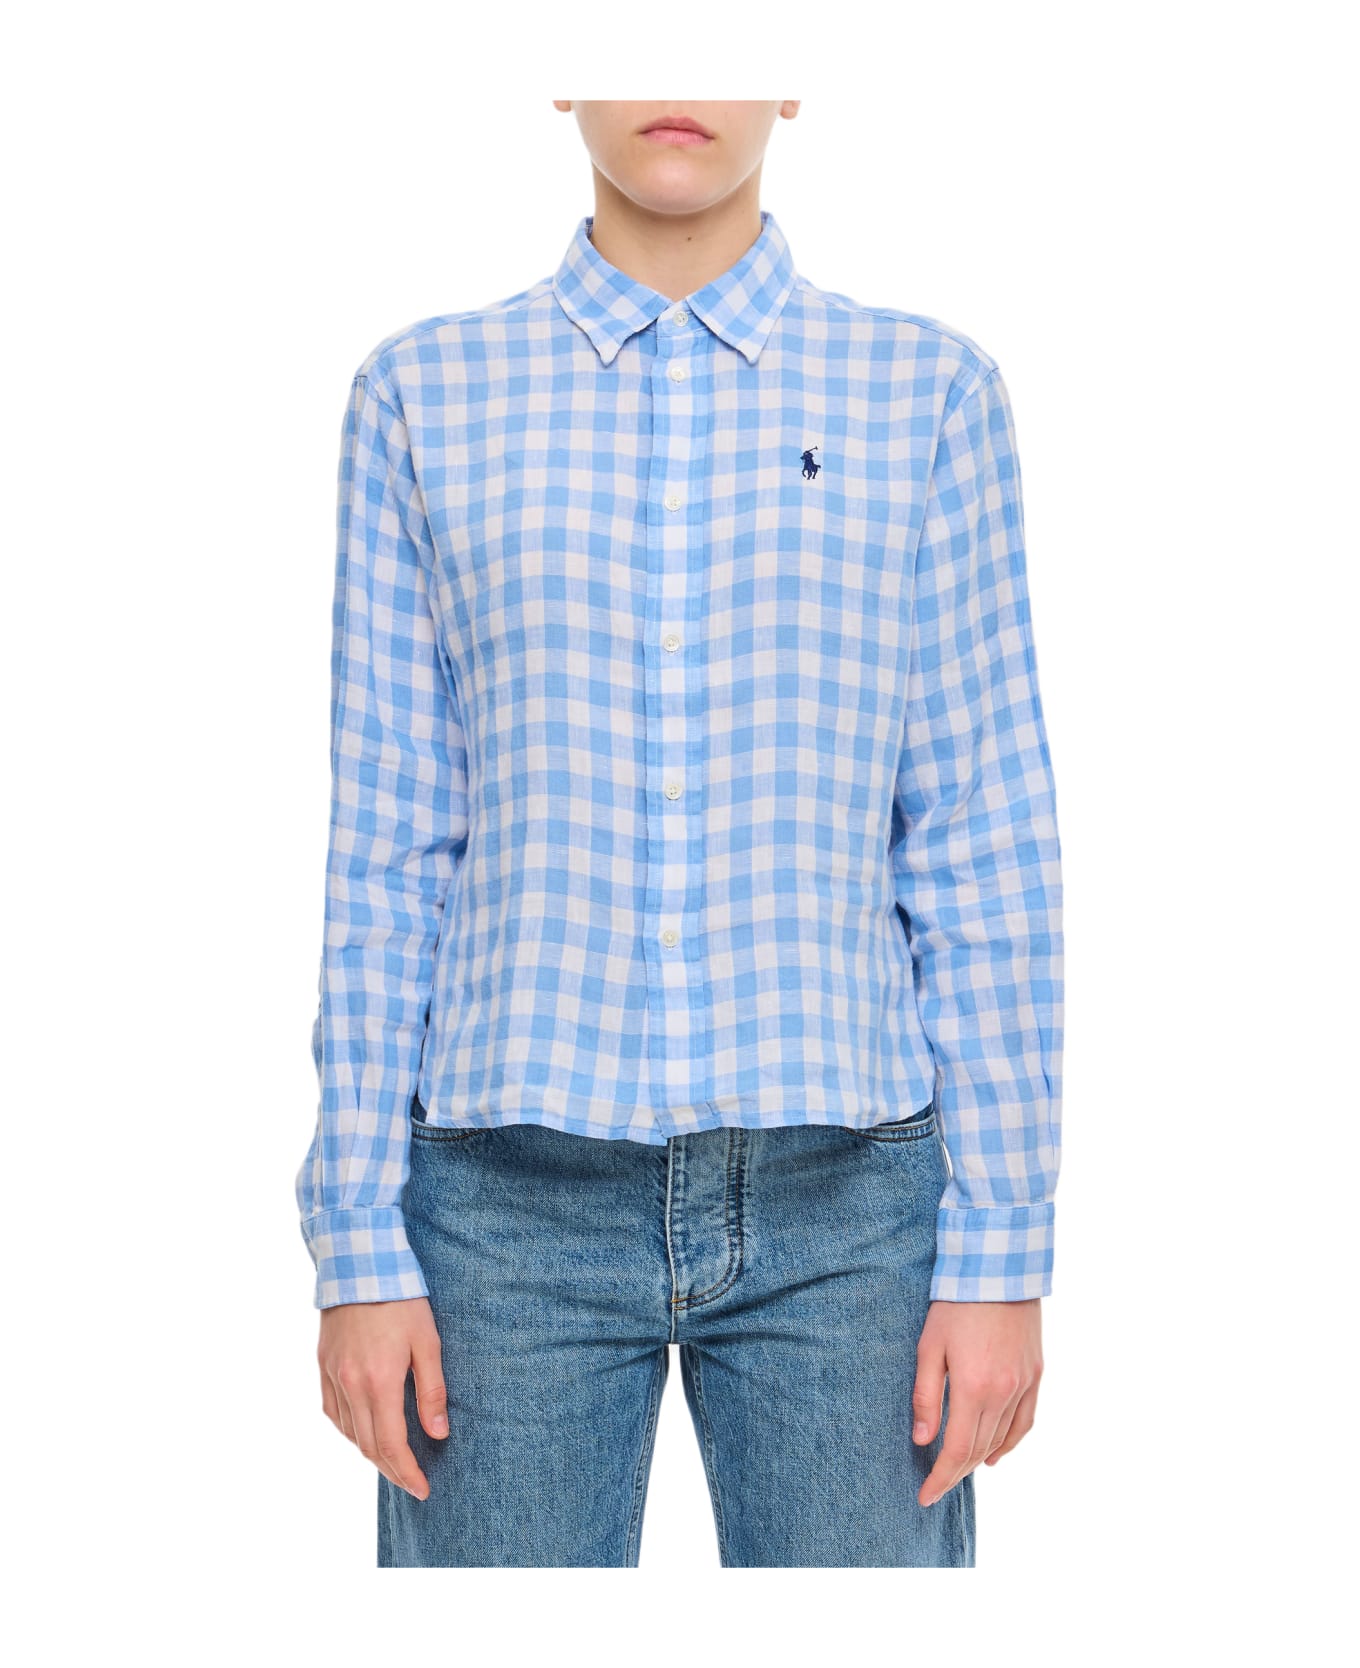 Polo Ralph Lauren Linen Crop Shirt - A Austin Blue White